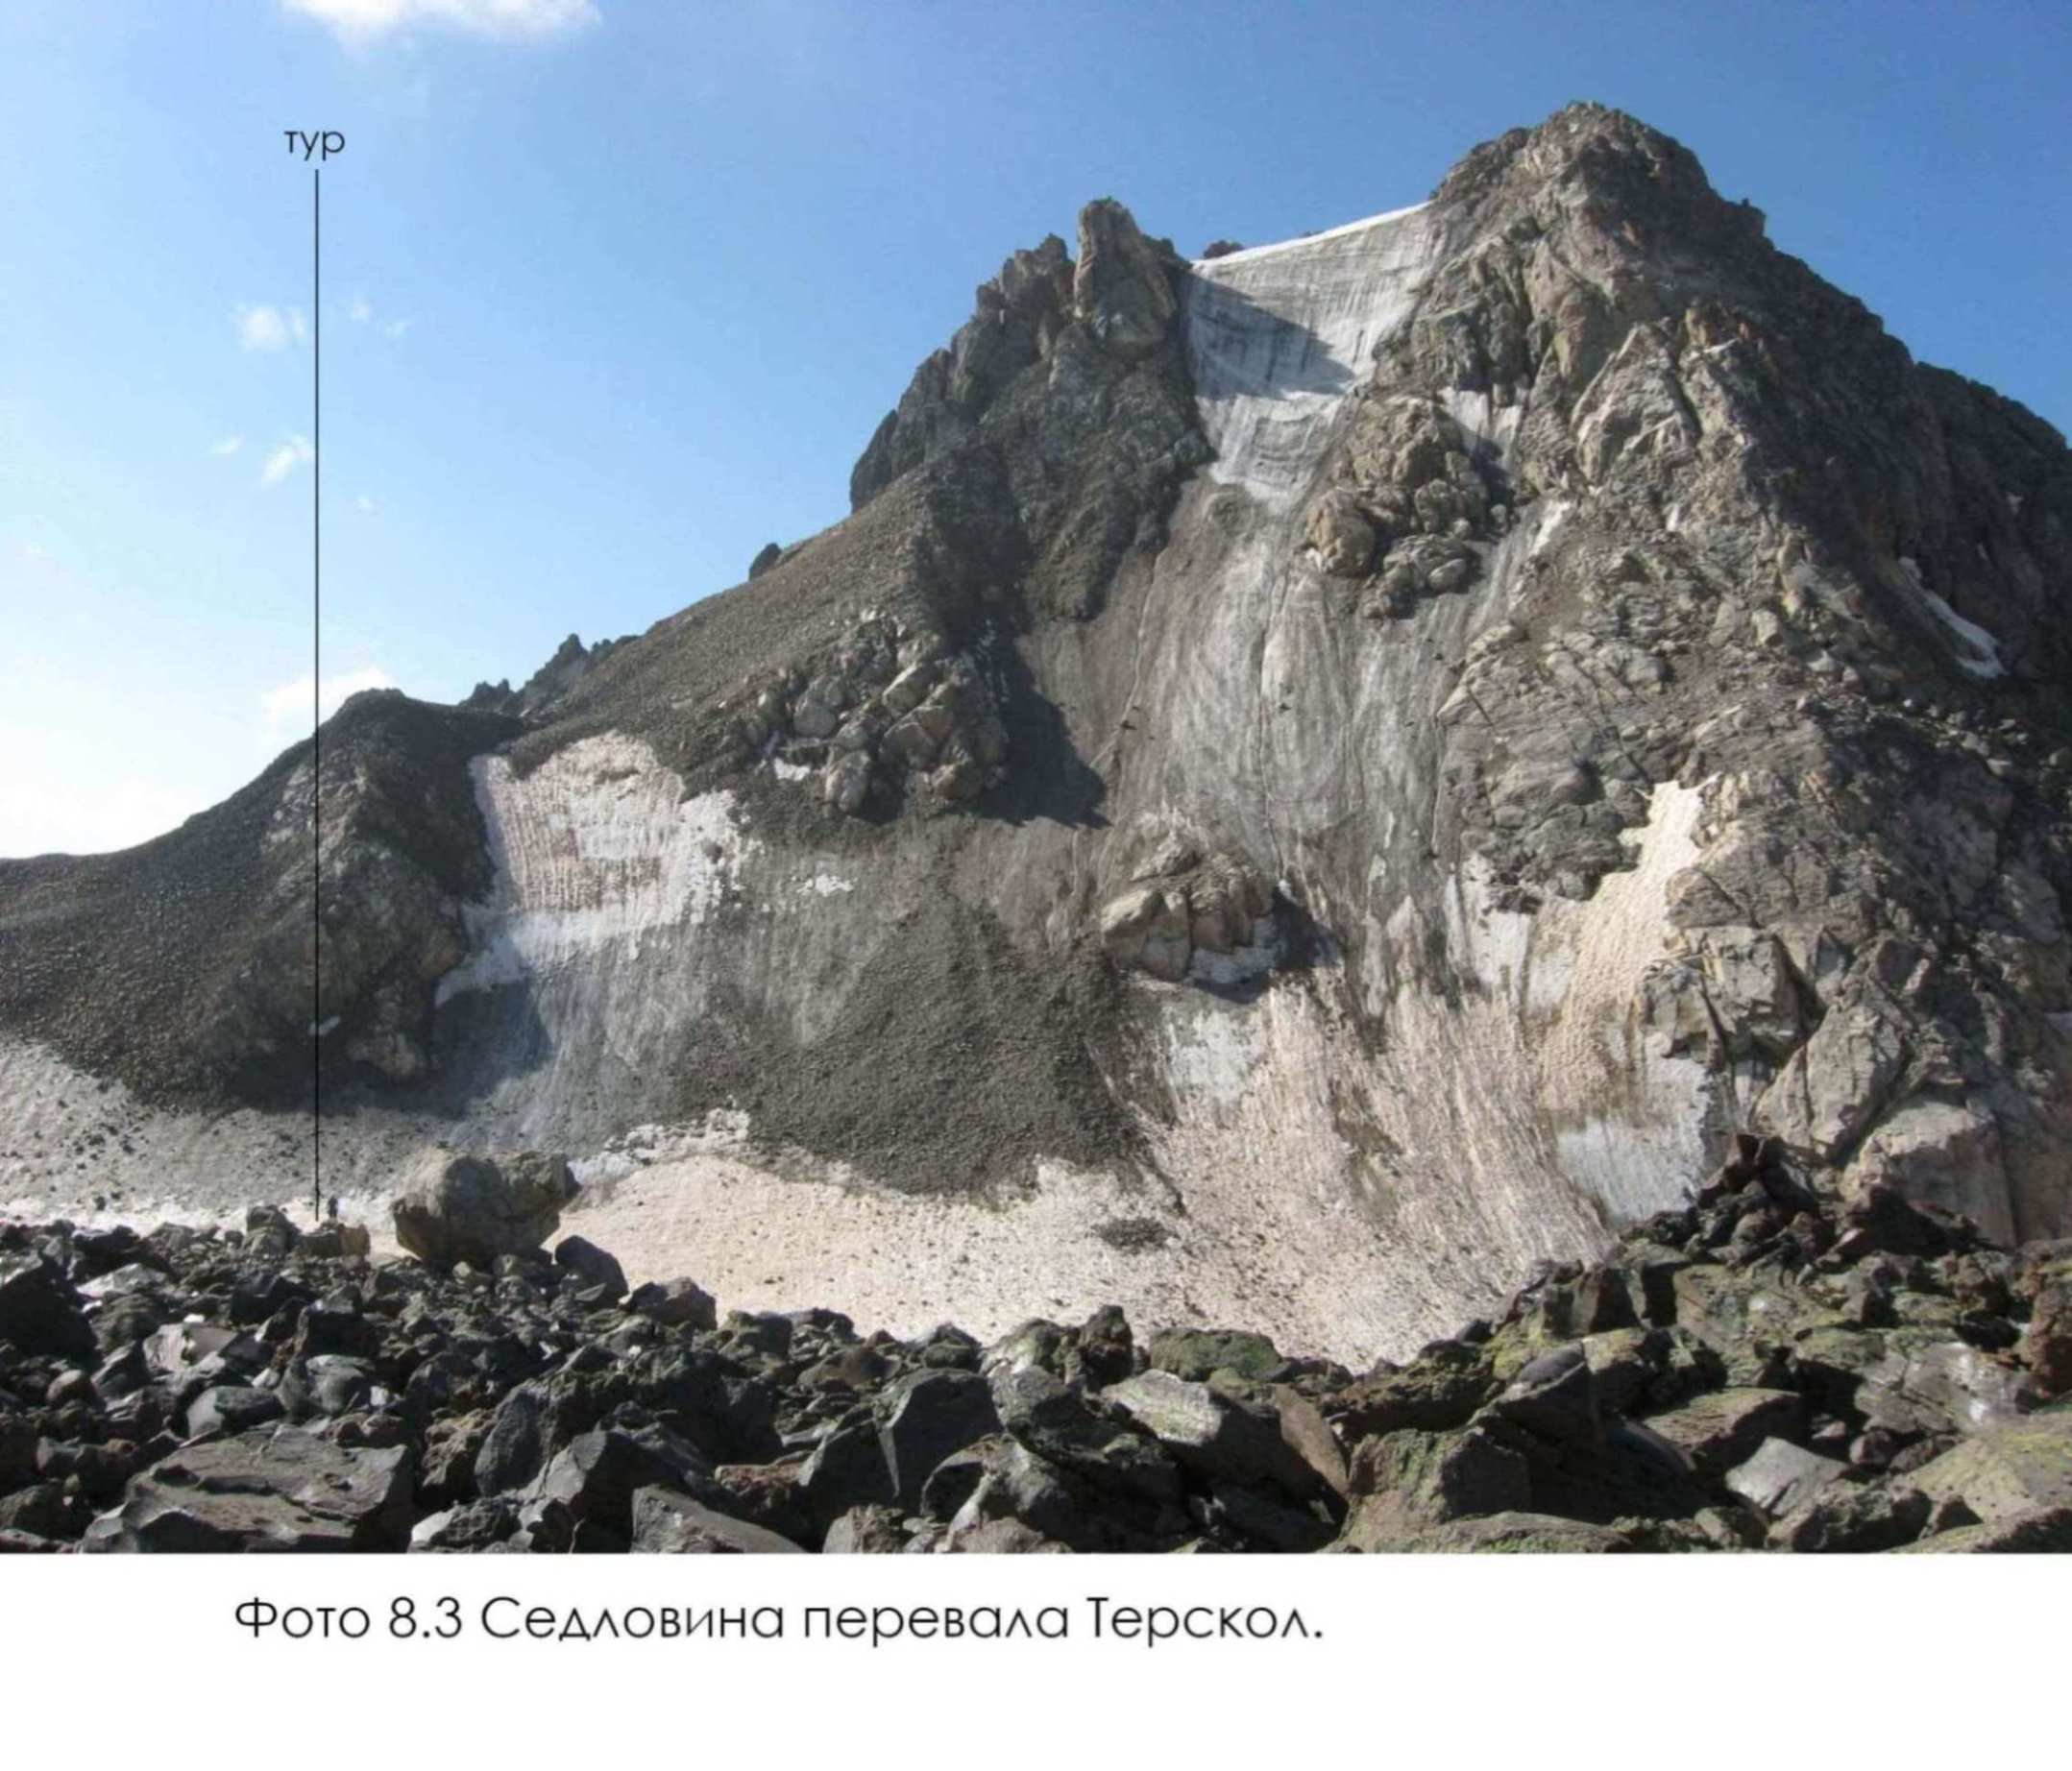 Отчет о горном походе 2 к.с. по Ц. Кавказу (Приэльбрусью)